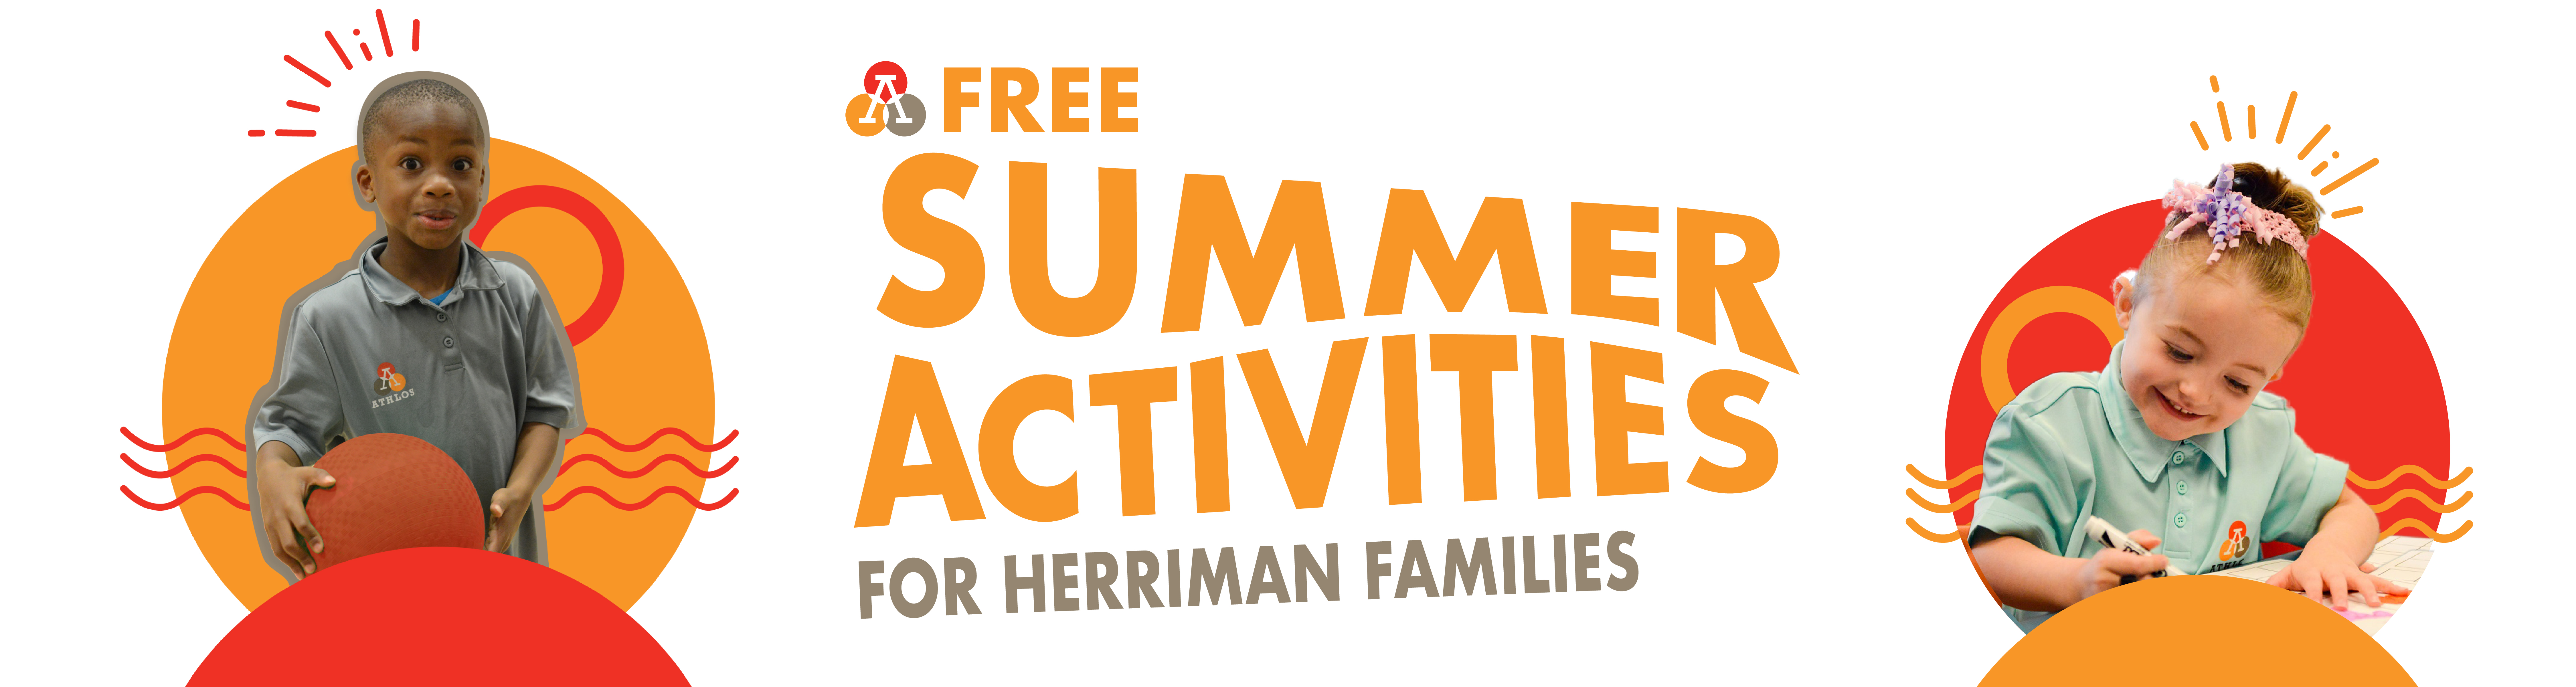 Free Summer Activities for Herriman Families